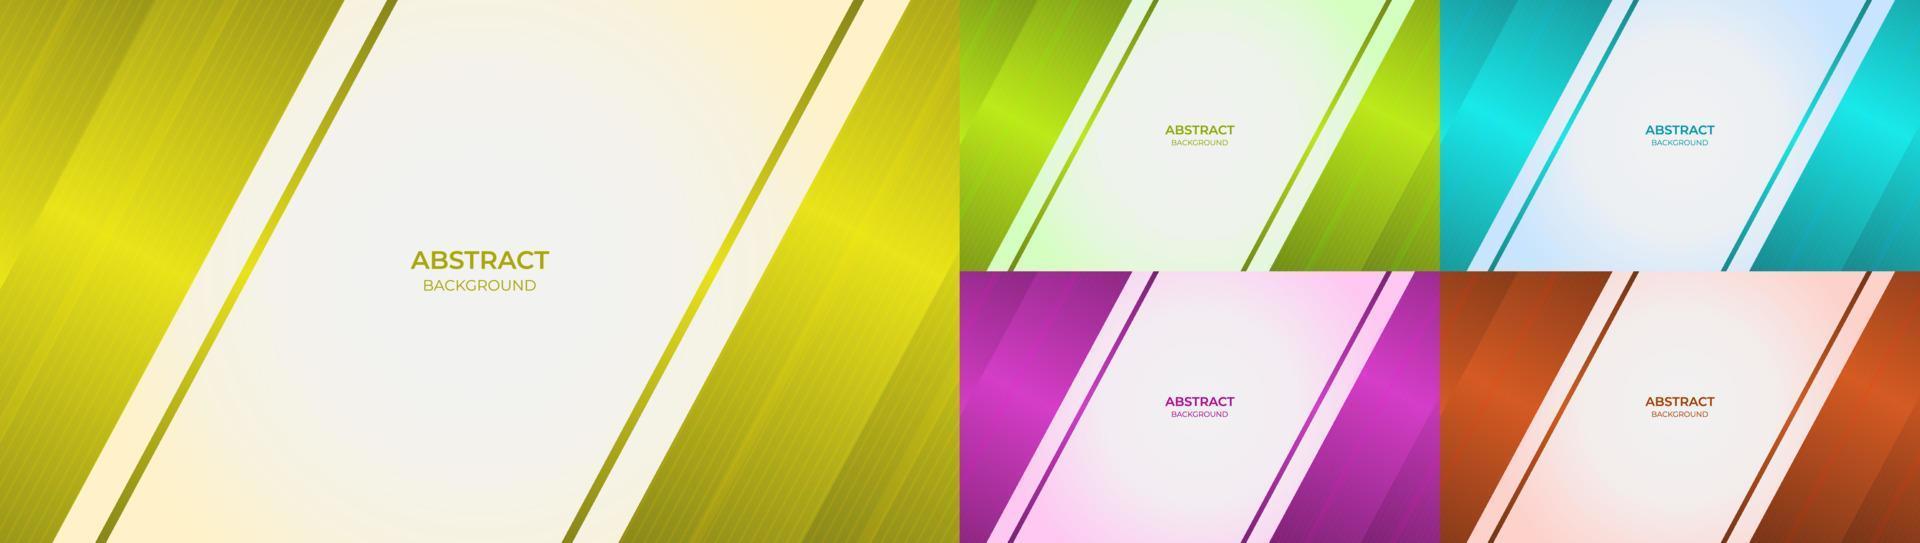 arrière-plan abstrait moderne avec un design géométrique dégradé coloré jaune, vert, bleu, violet et rouge. illustration vectorielle vecteur